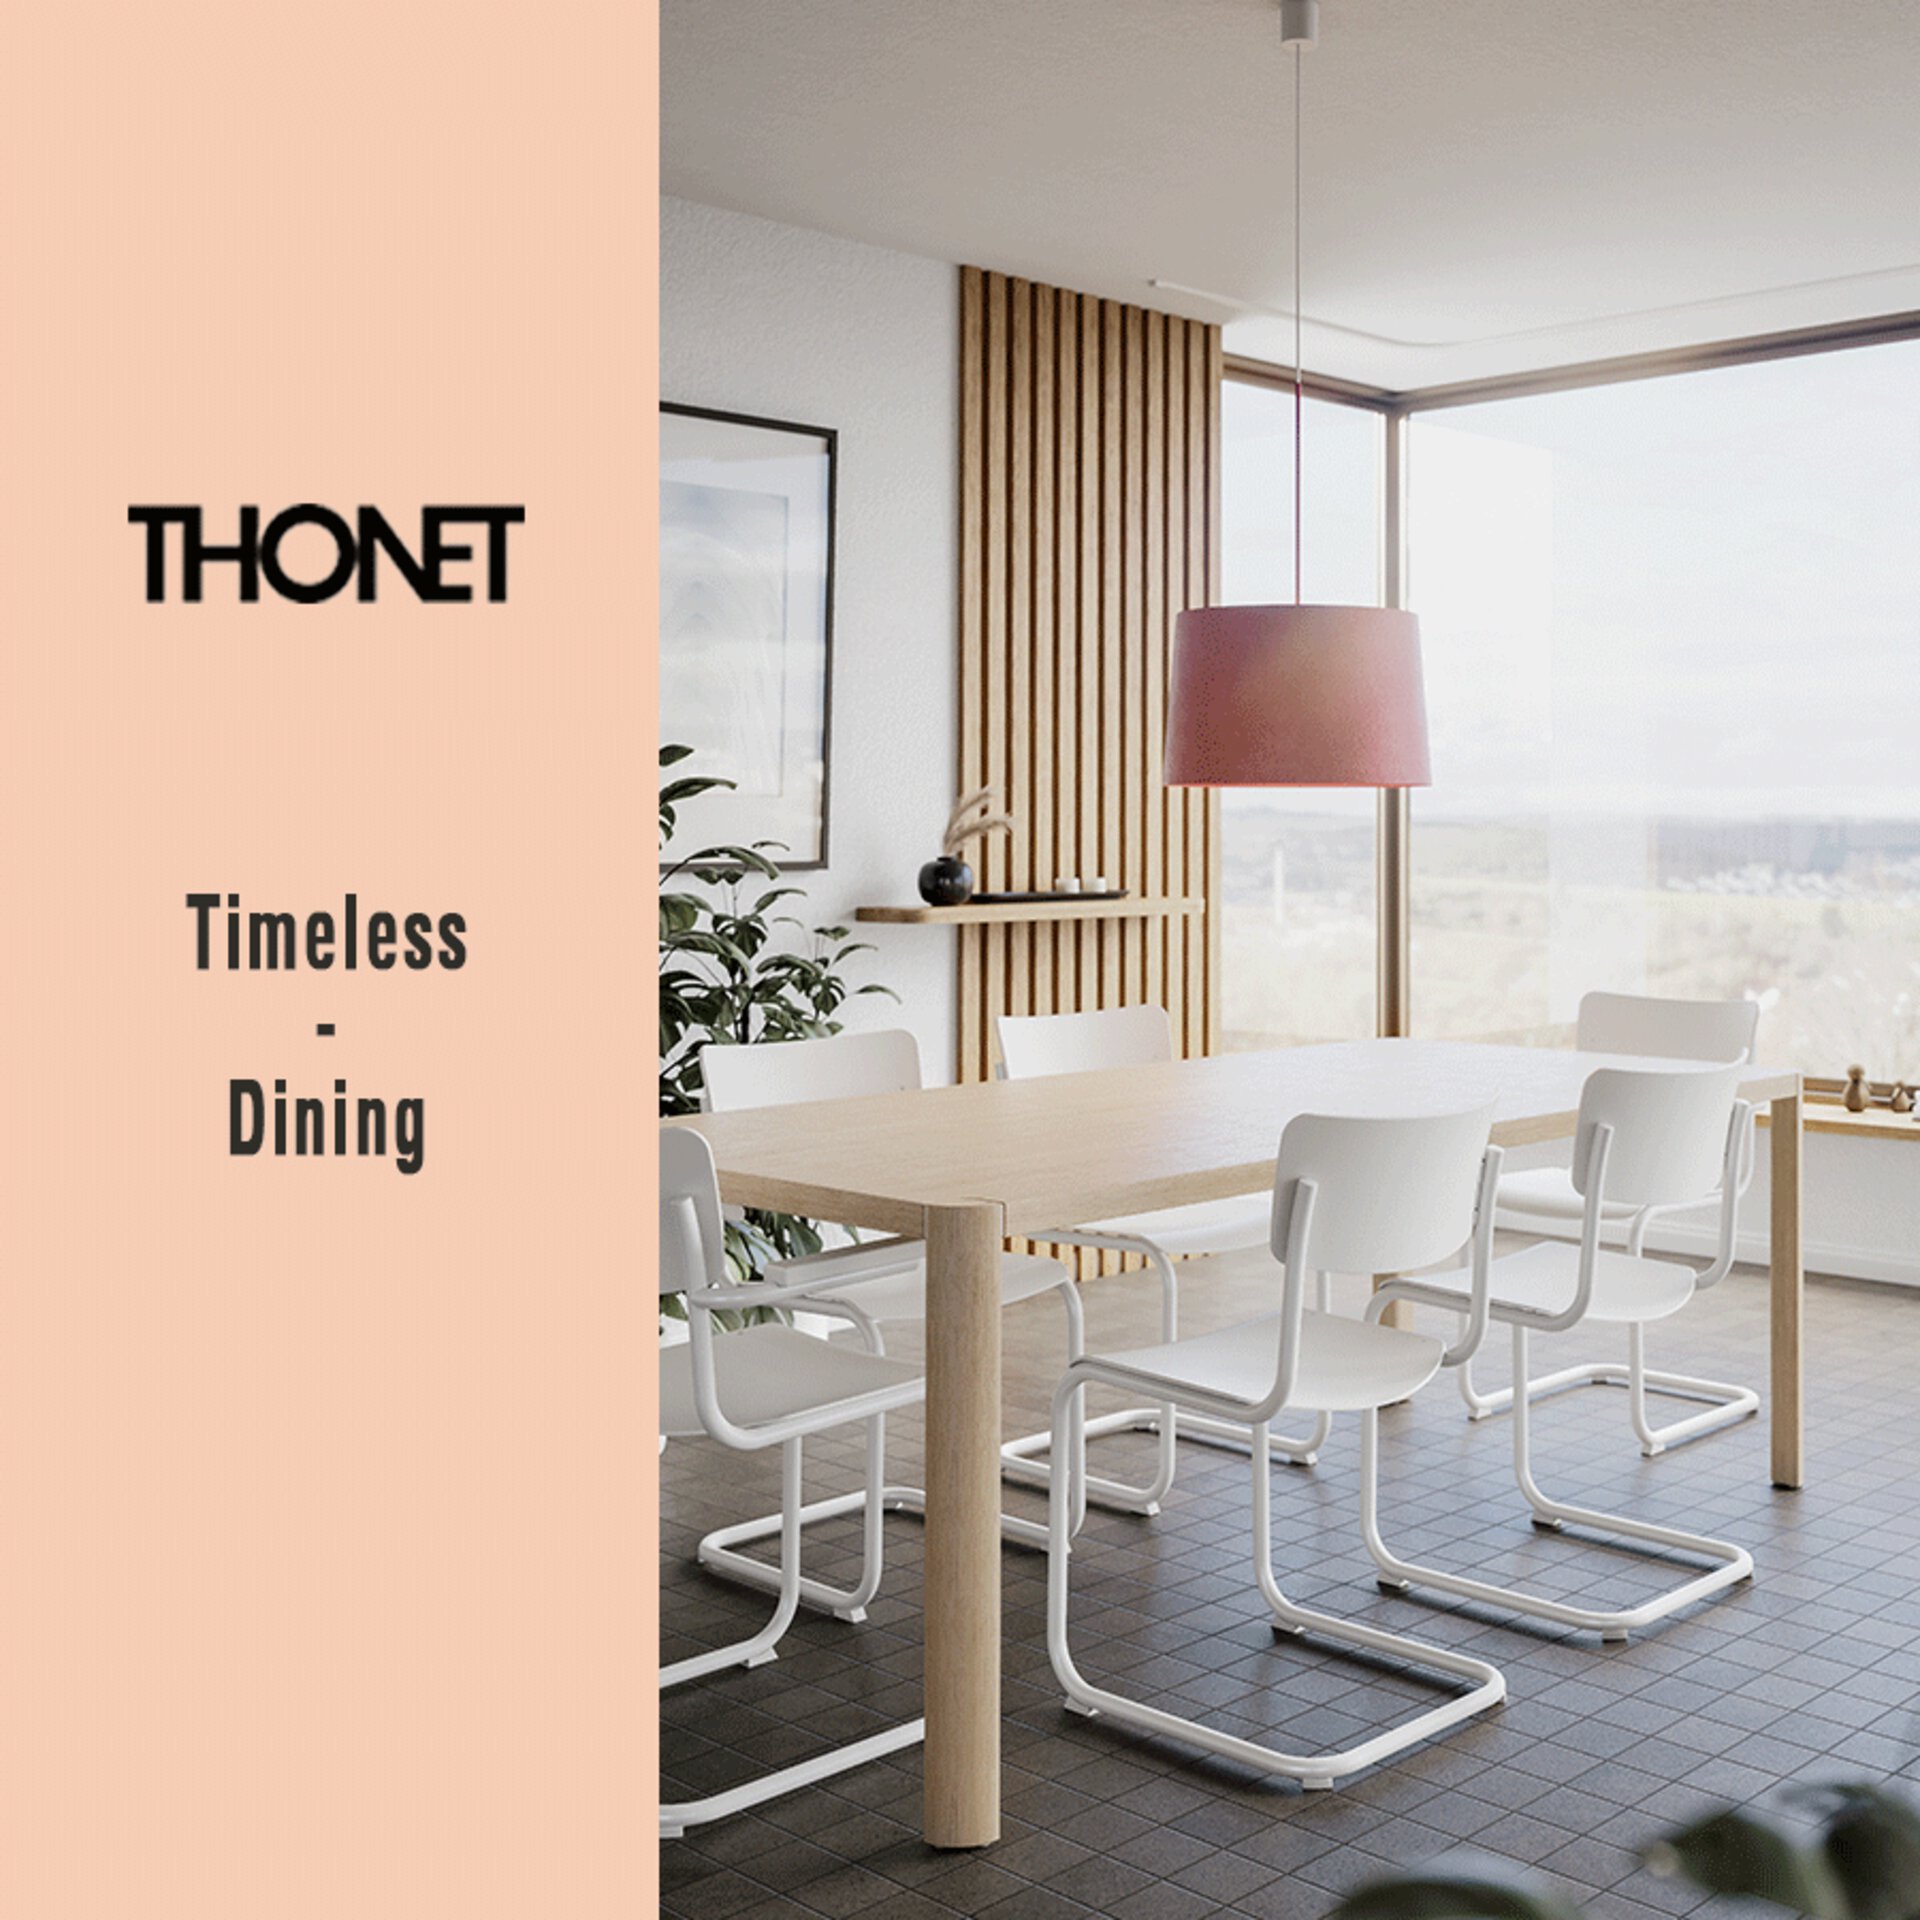 Zur Aktion Thonet Timeless Dining bei interni by inhofer